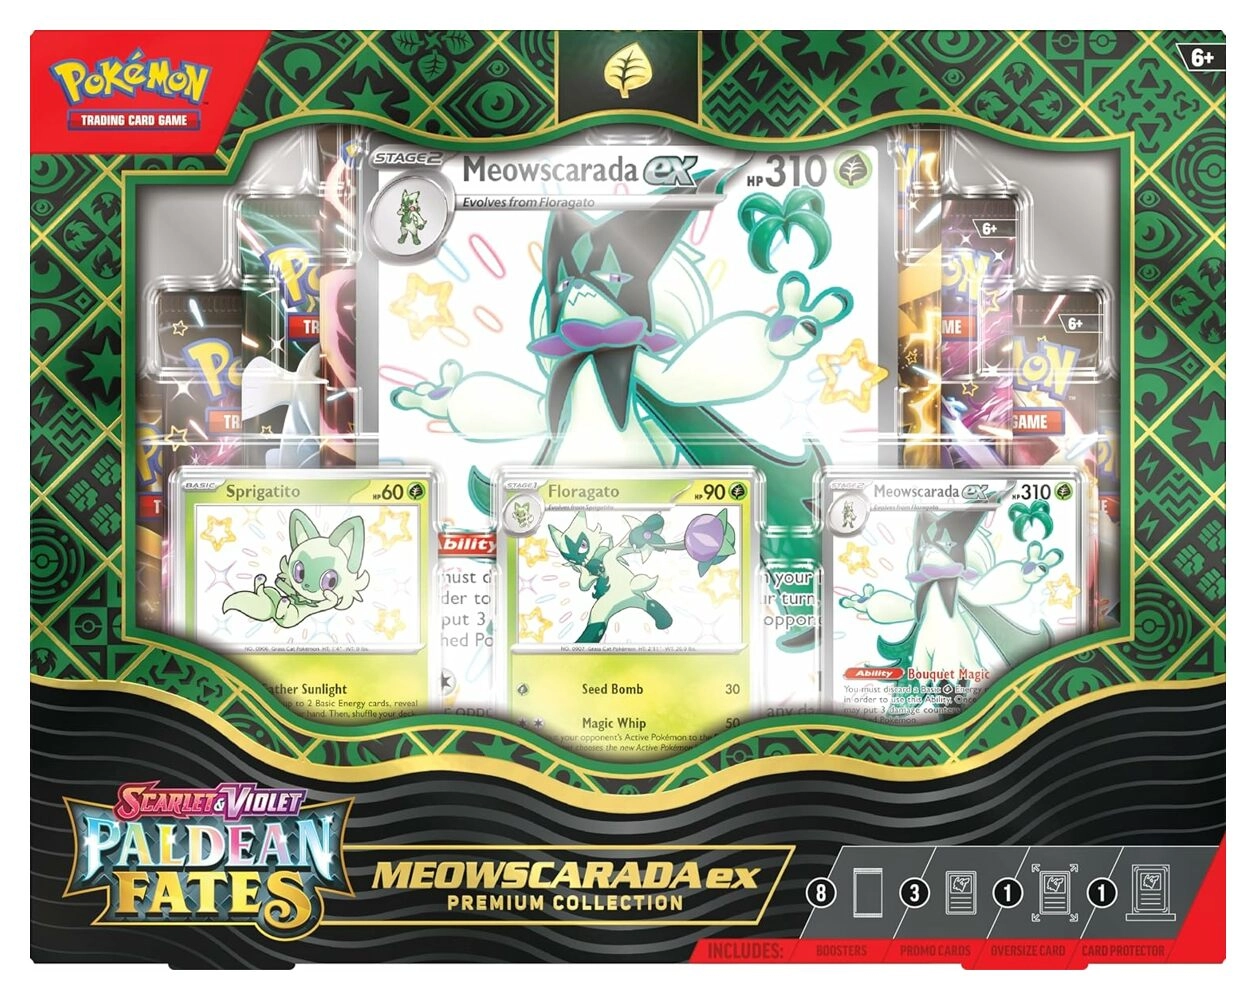 Pokémon Meowscarada ex Premium Collection SV04.5 - EN